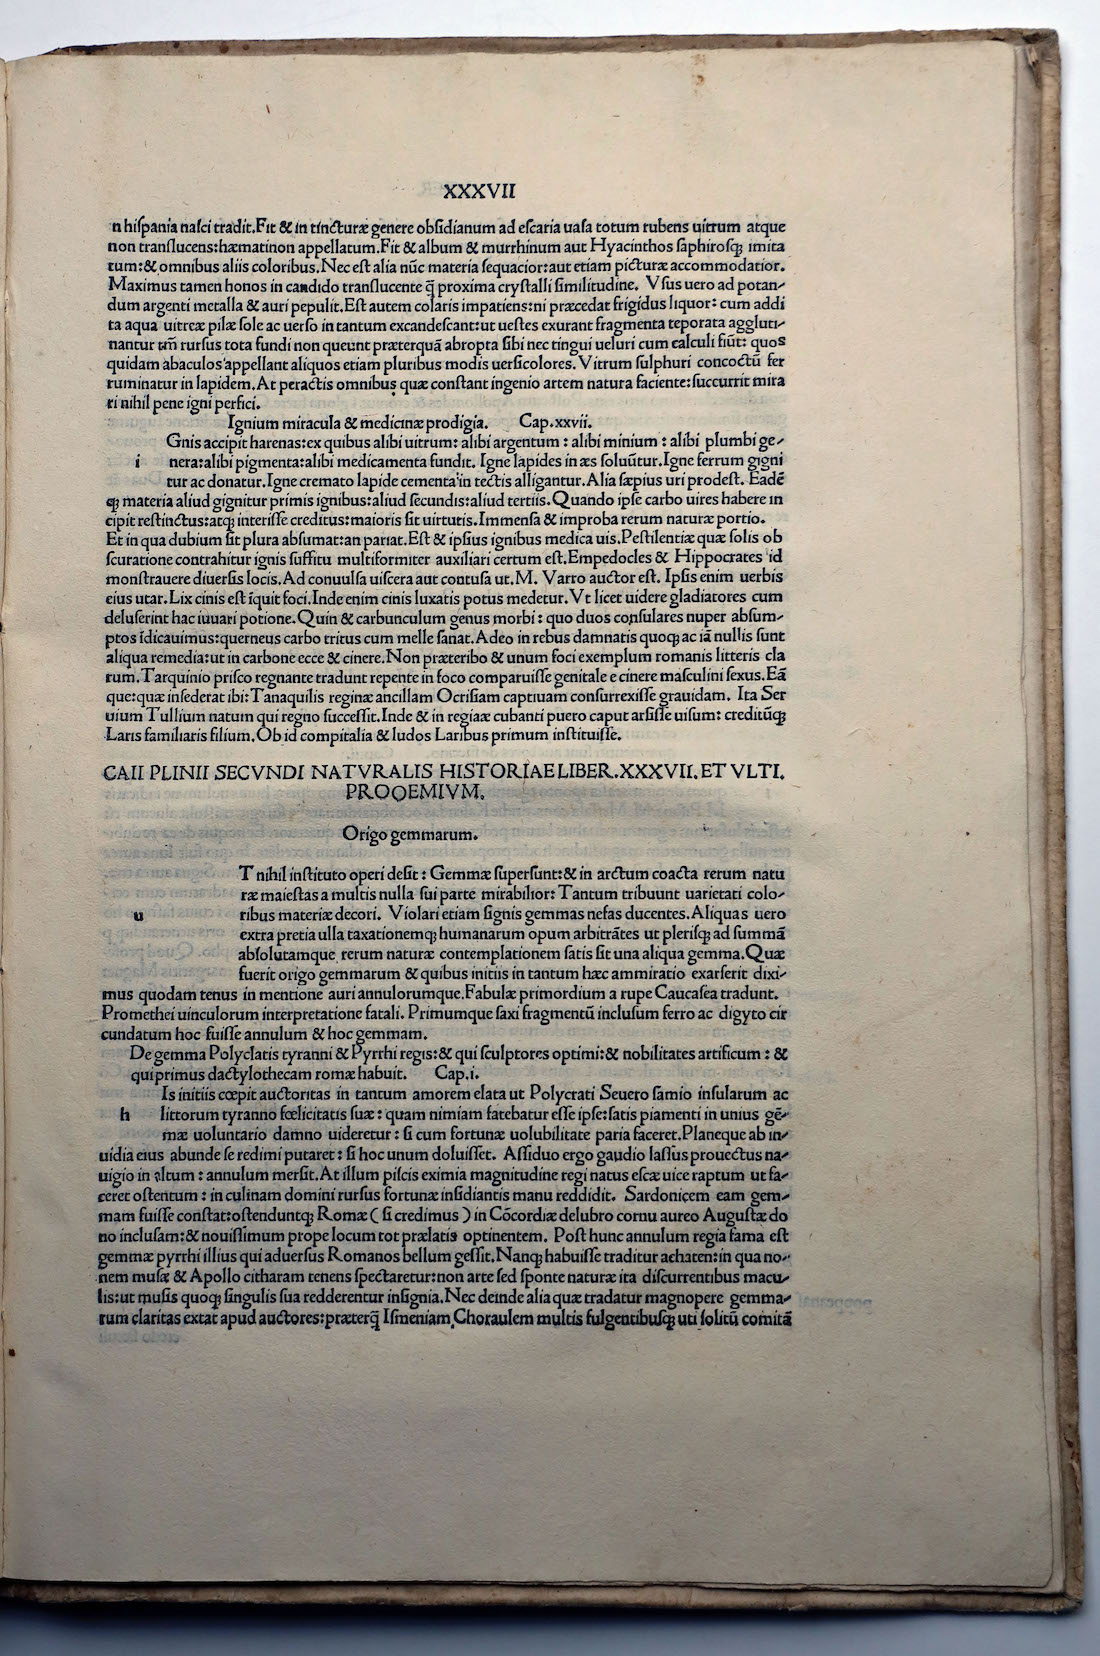 Plinius Secundus, 1497